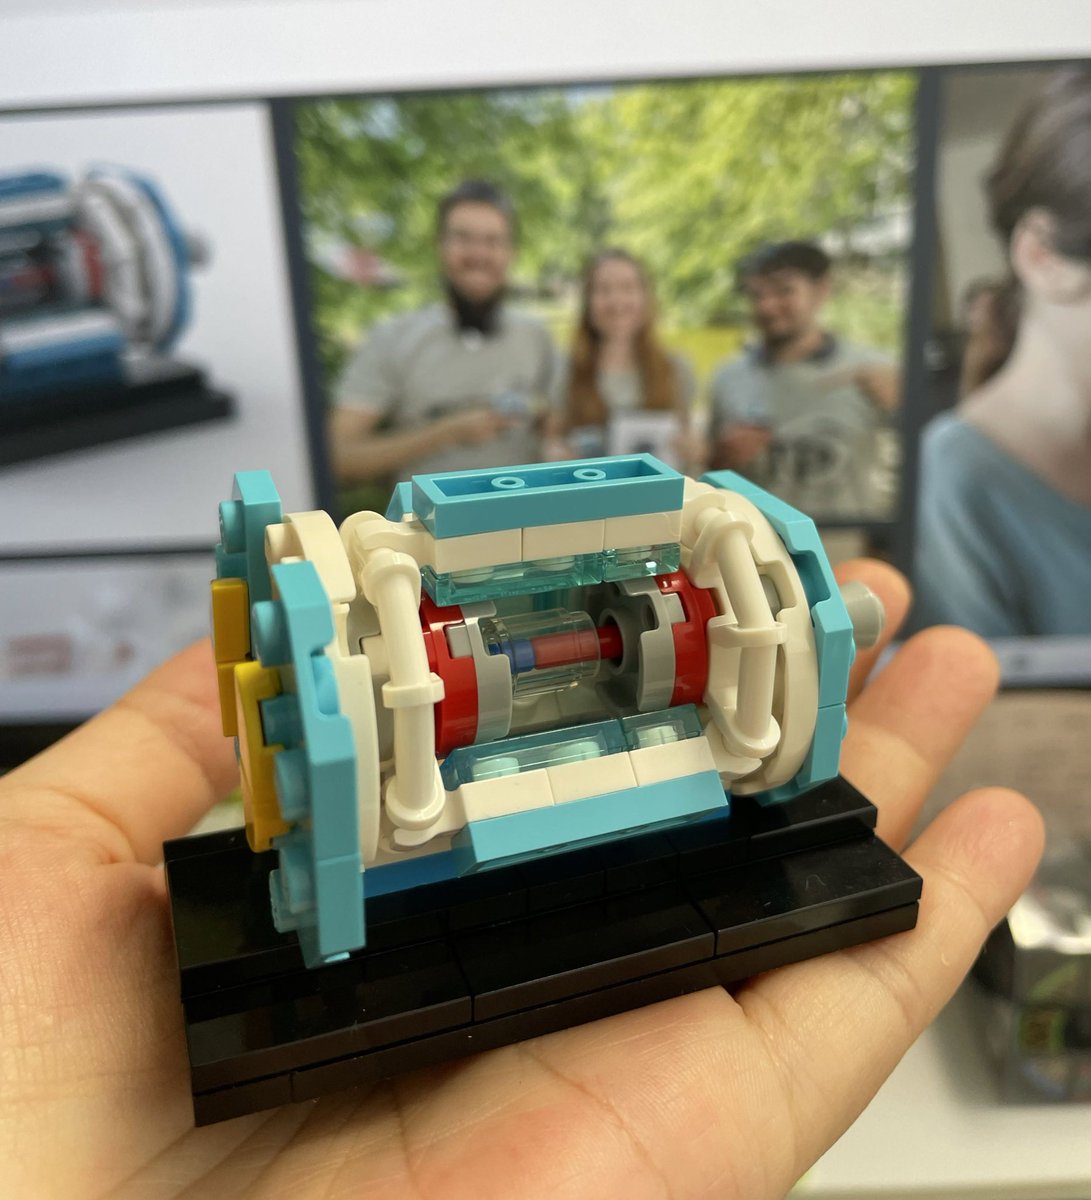 Belle II測定器のレゴの近くに、ドイツグループが考案した「Belle II測定器LEGOモデル」の組み立て手順書も置いてあります！ #belle2 #レゴの日 #LEGO